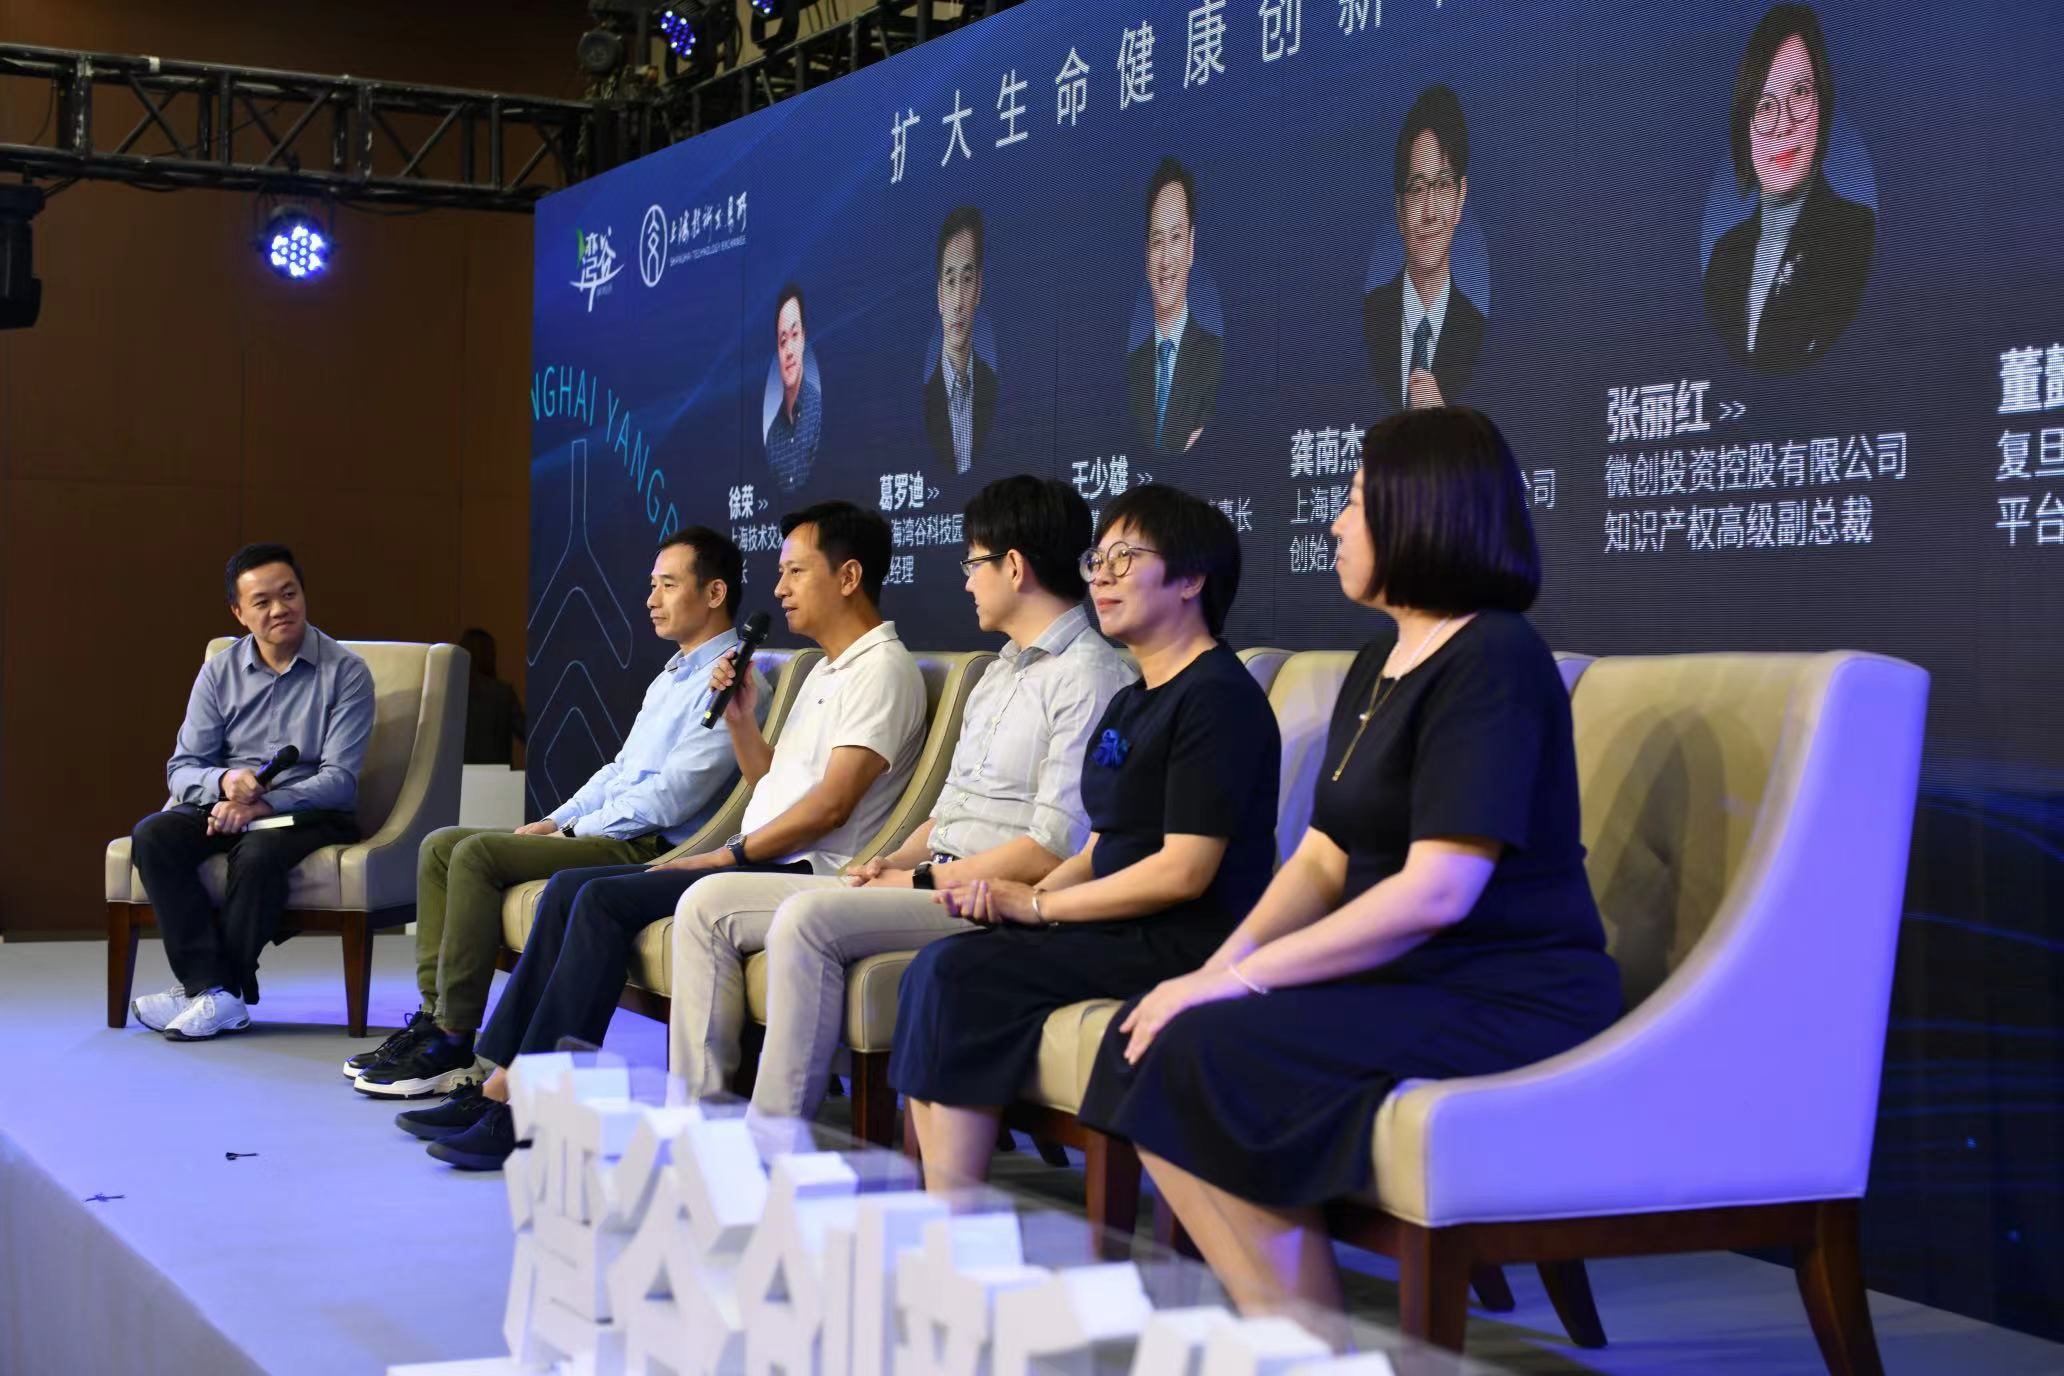 上海灣谷科技園成立創新發展聯盟